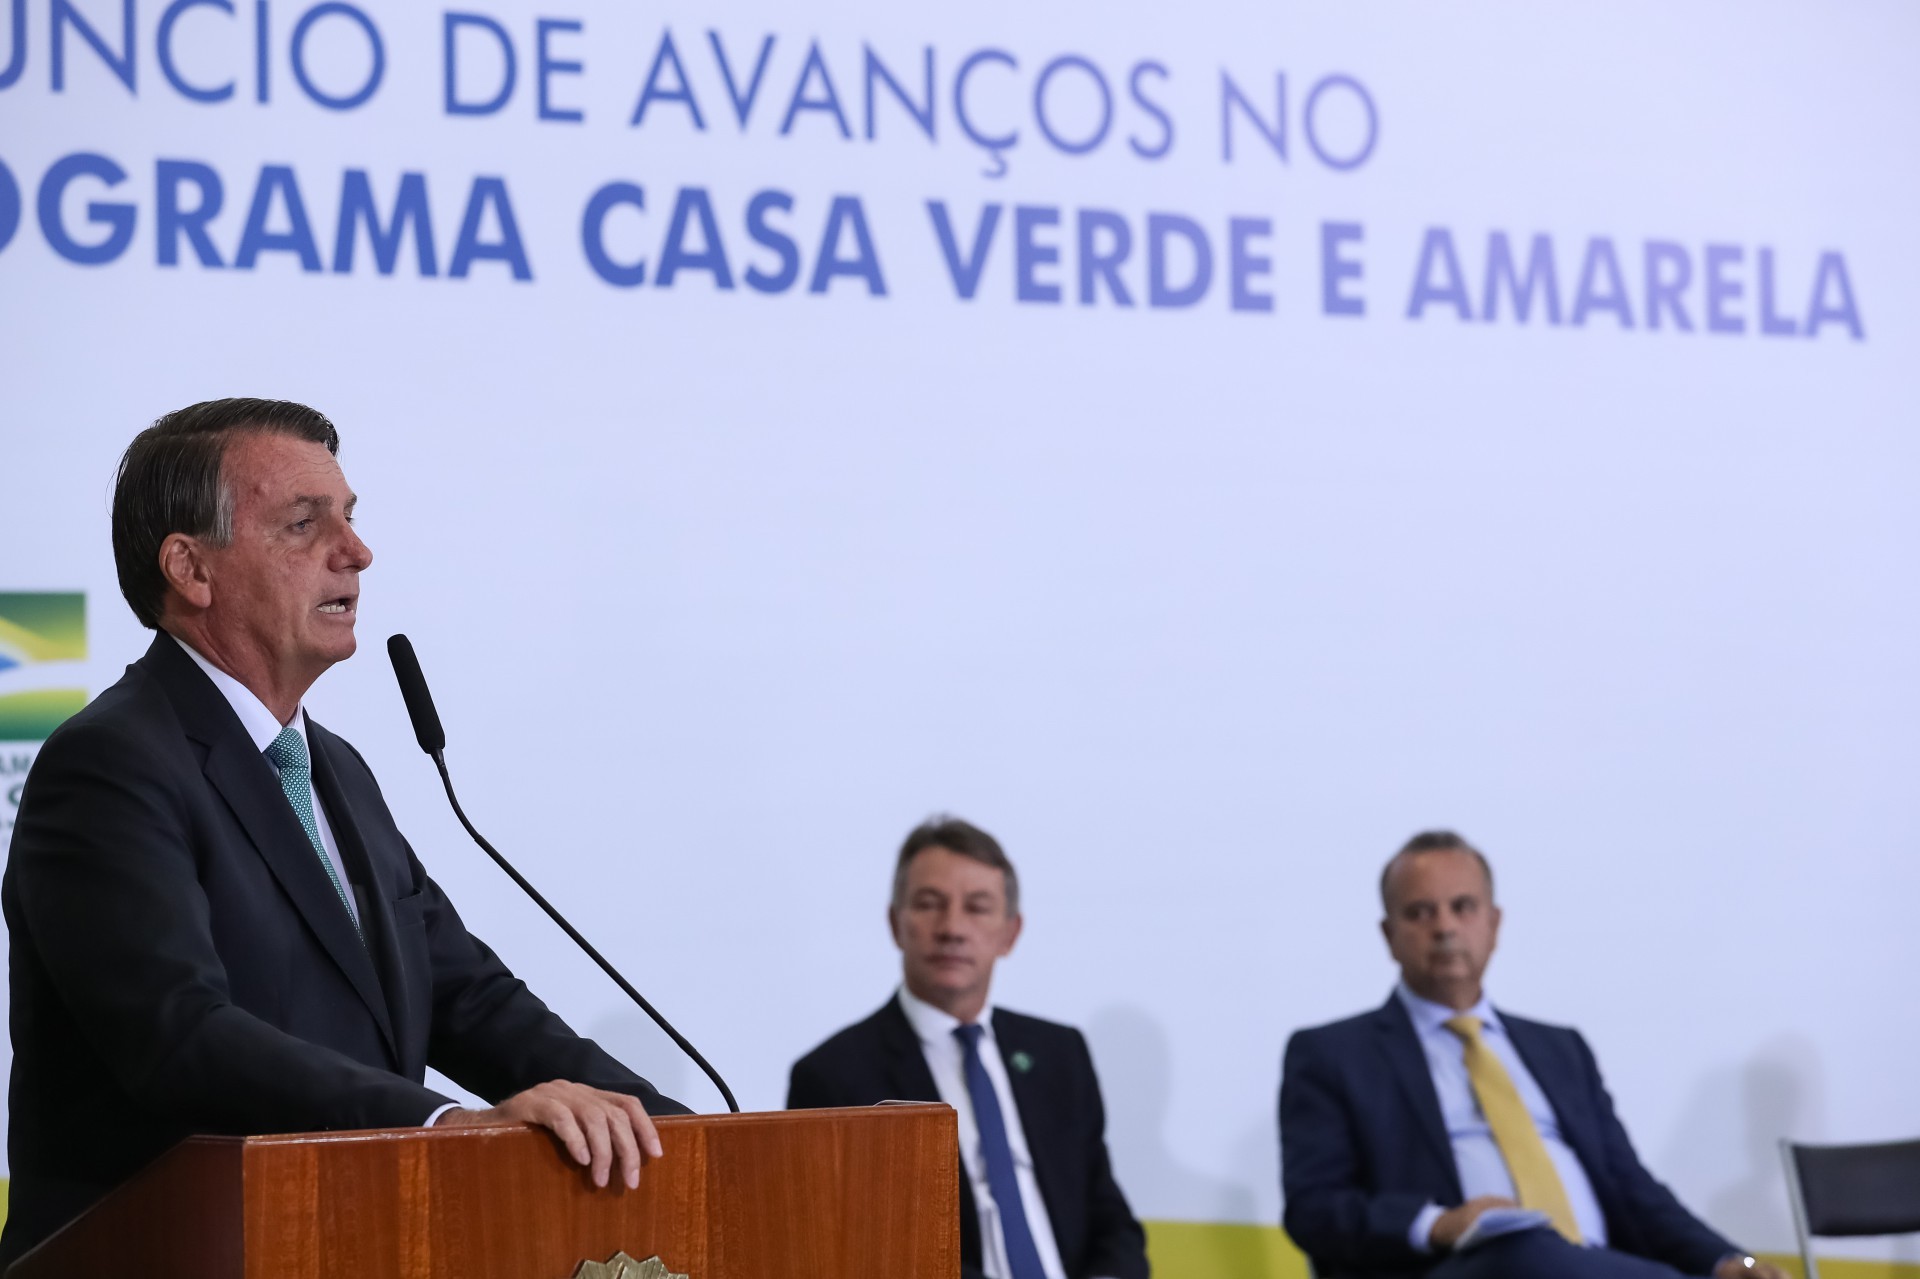 ￼Lançamento contou com o presidente Bolsonaro e comitiva federal (Foto: Marcos Corrêa/PR)